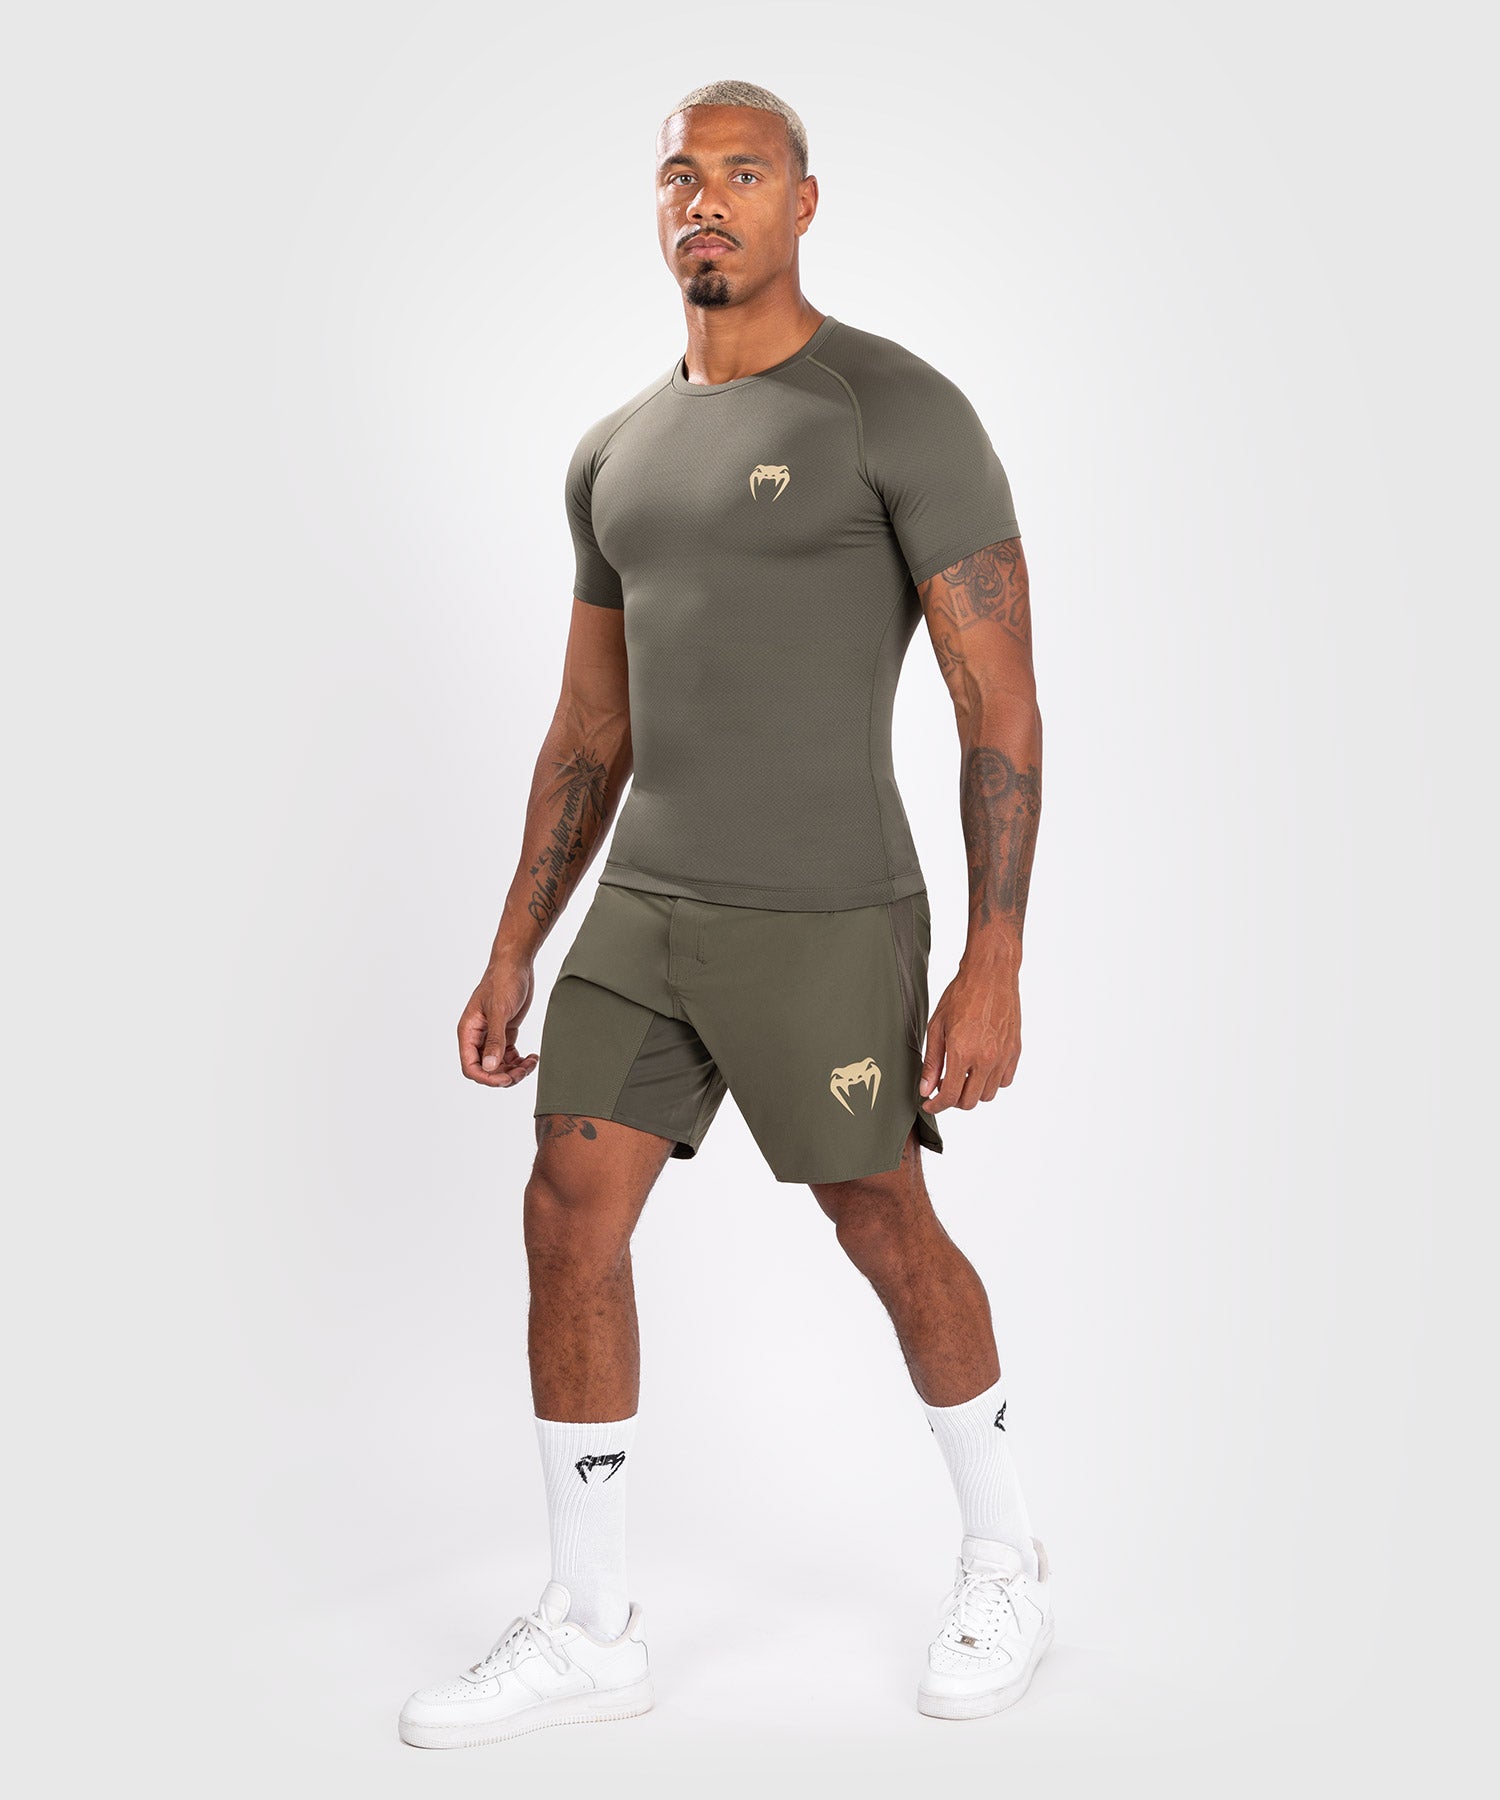 Rashguard à manches courtes pour hommes Venum Contender - Kaki - Shorts de compression